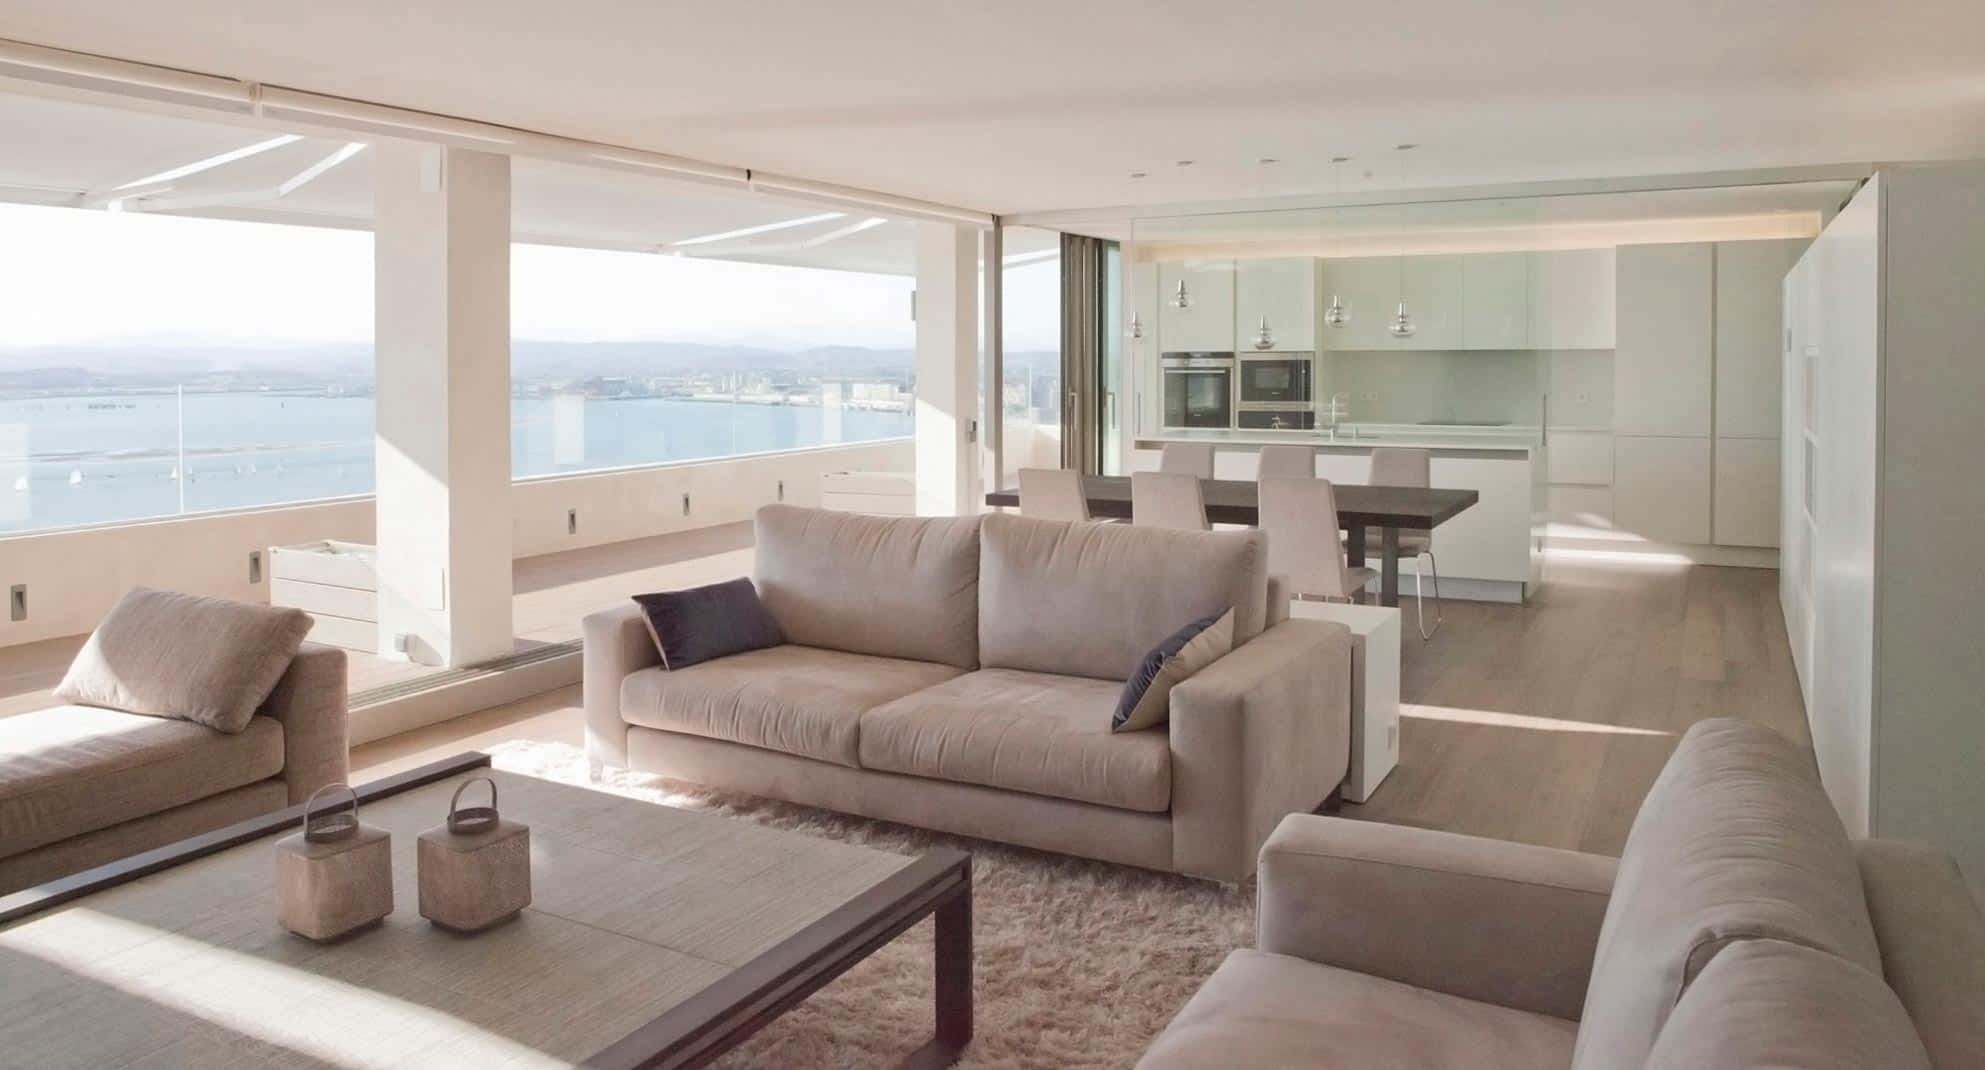 Salón con vistas al mar en reforma integral de vivienda de lujo diseñada por Moah Decorador de Interiores en Santander